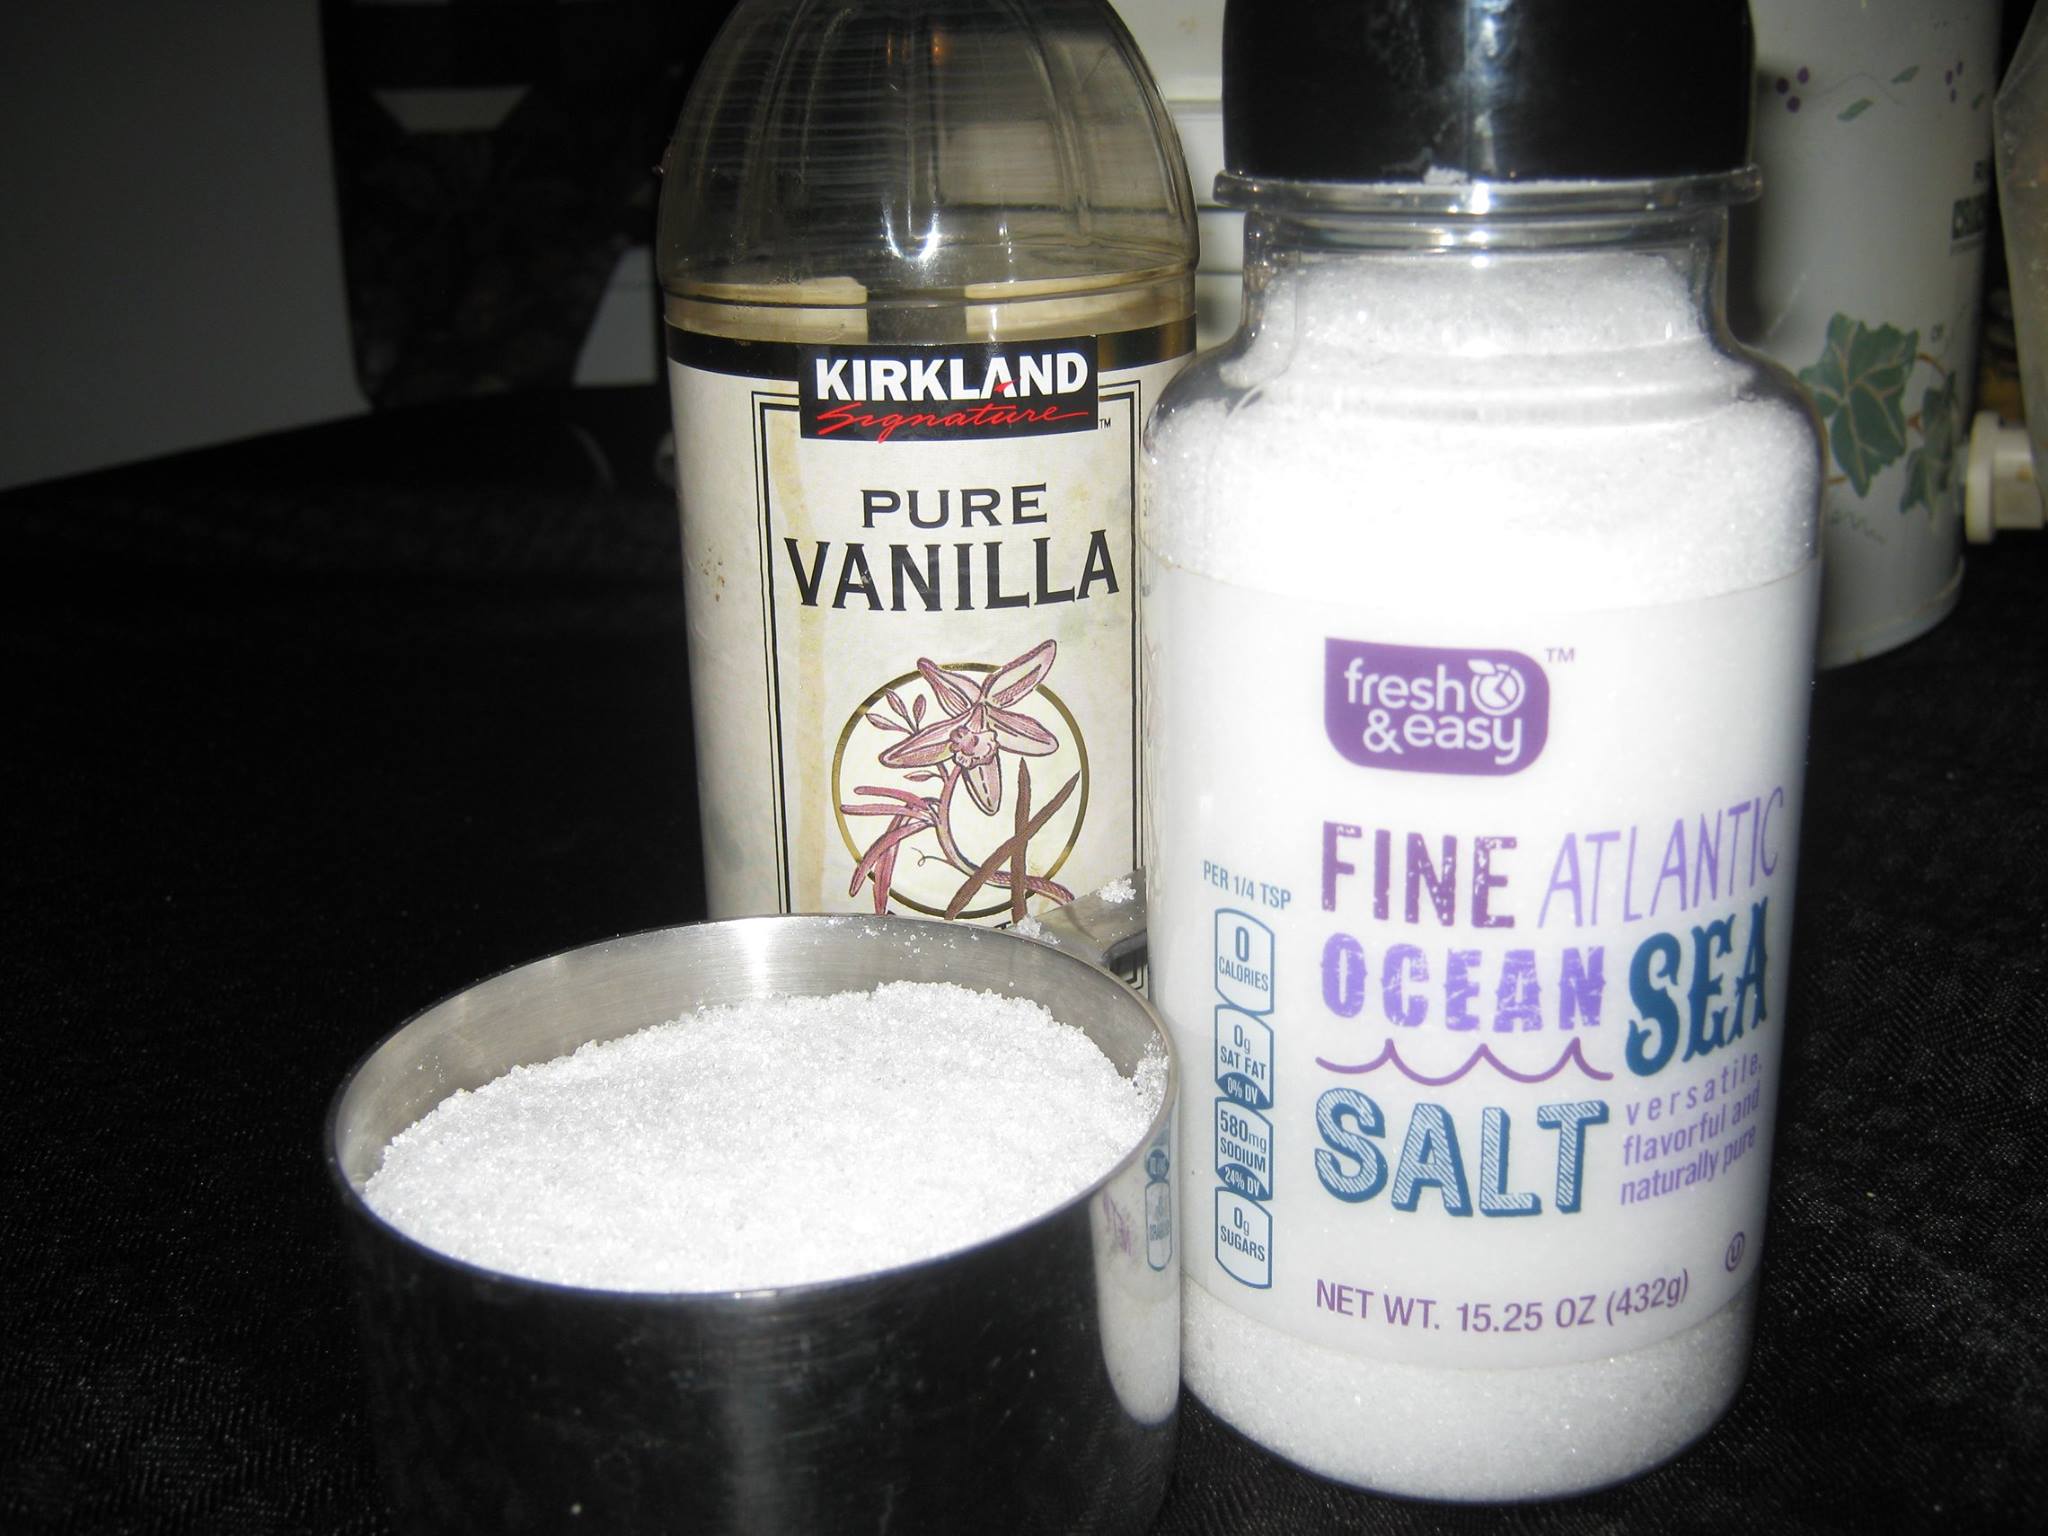 Salt, xylitol and vanilla